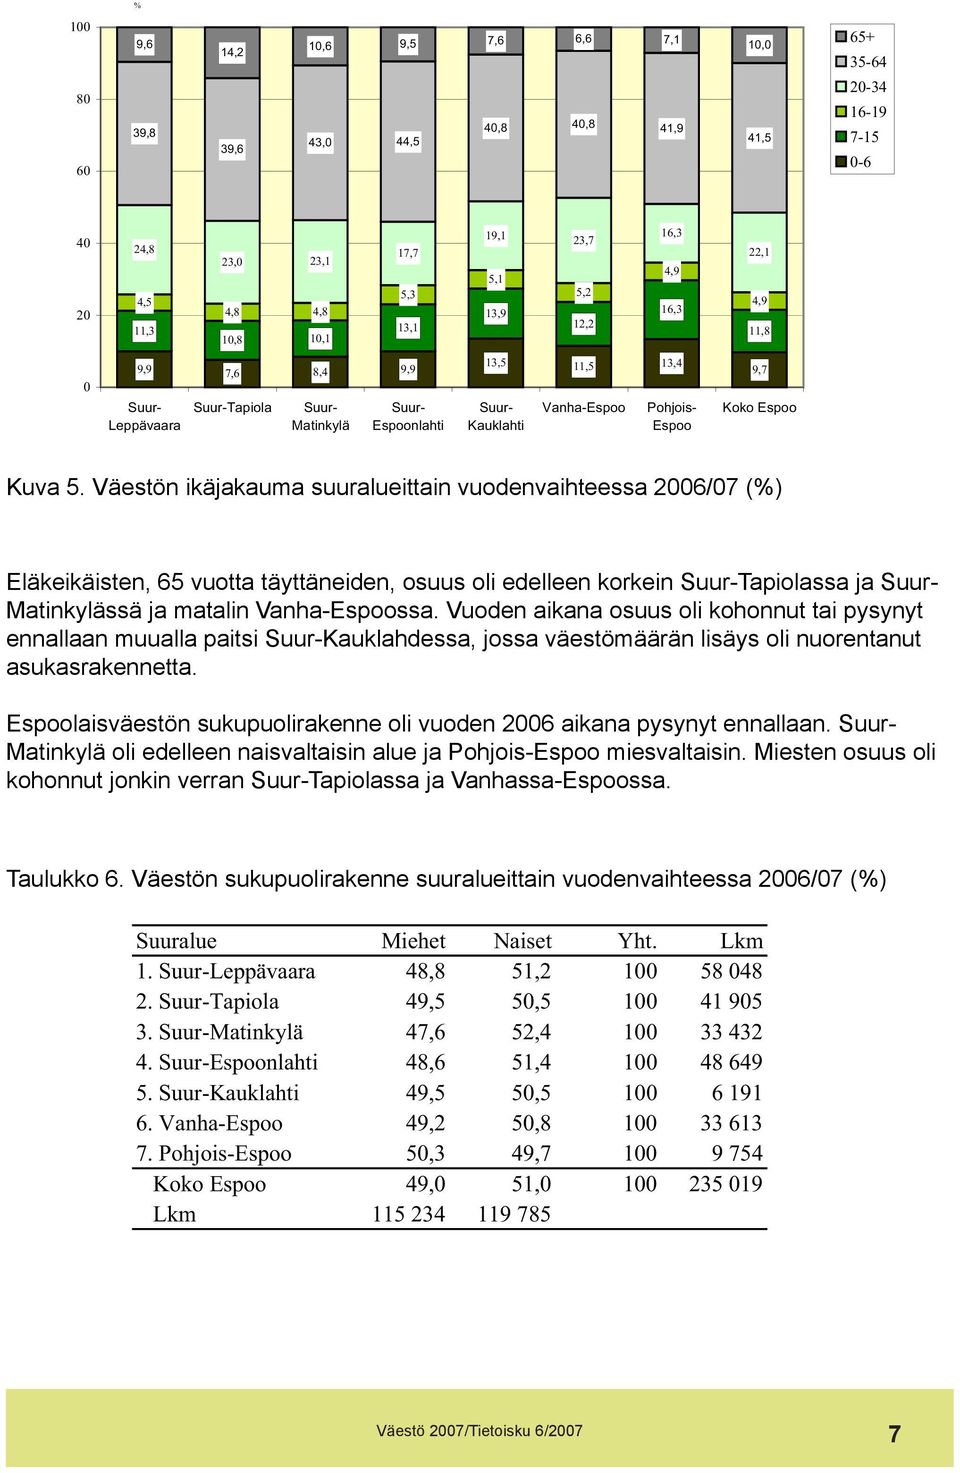 Väestön ikäjakauma suuralueittain vuodenvaihteessa 2006/07 (%) Eläkeikäisten, 65 vuotta täyttäneiden, osuus oli edelleen korkein Tapiolassa ja Matinkylässä ja matalin Vanha-Espoossa.